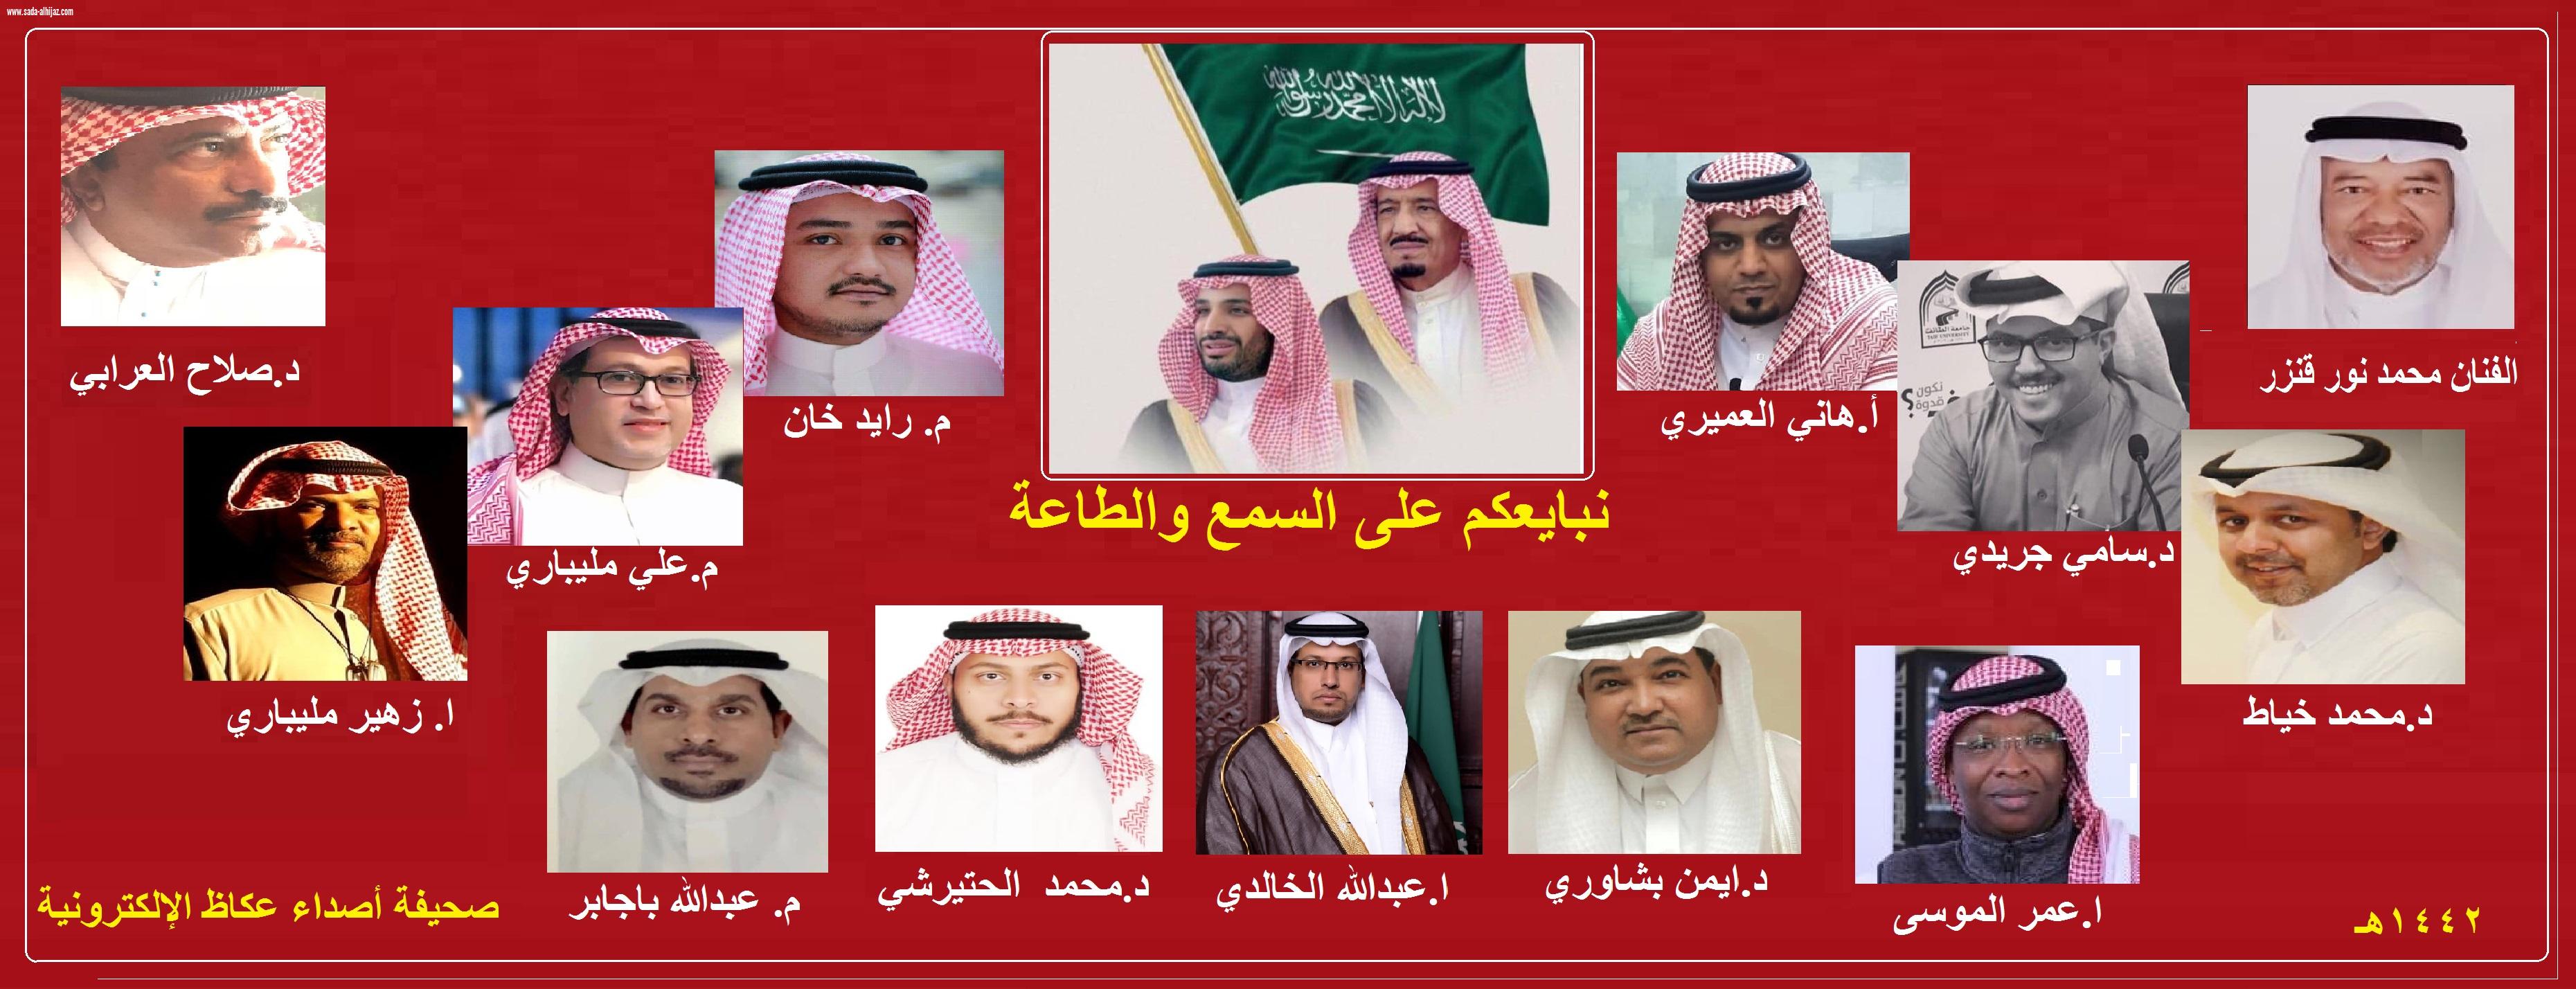 تمت مبايعة خادم الحرمين الشريفين الملك سلمان حفظه الله ملك المملكة العربية السعودية عام ١٤٣٦ه